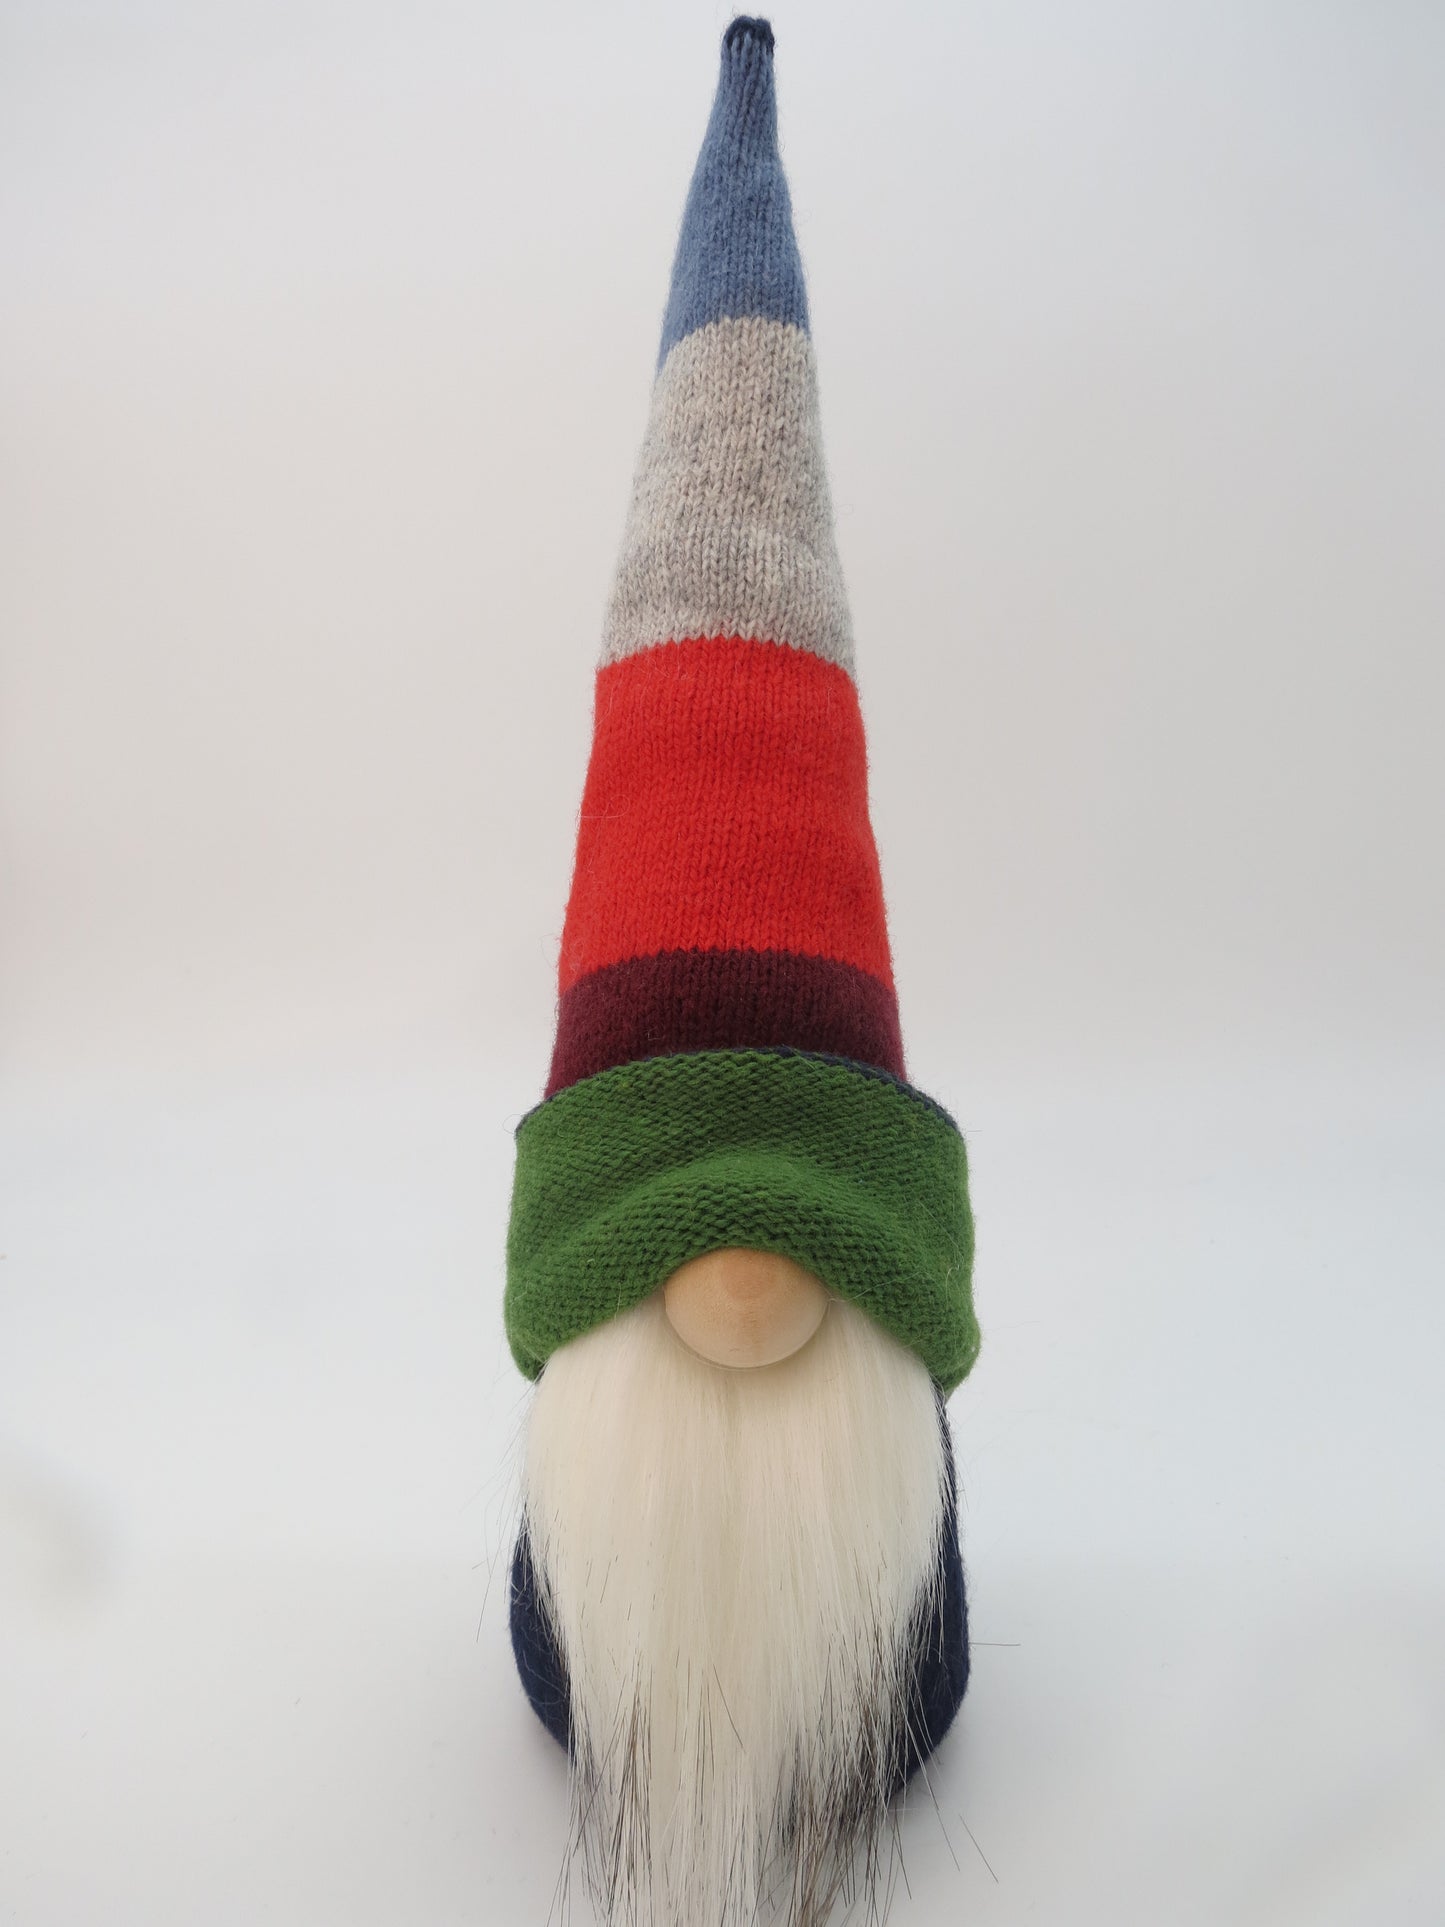 10" (25.4 cm) Small Gnome (6033) Multi Colour/Stripe